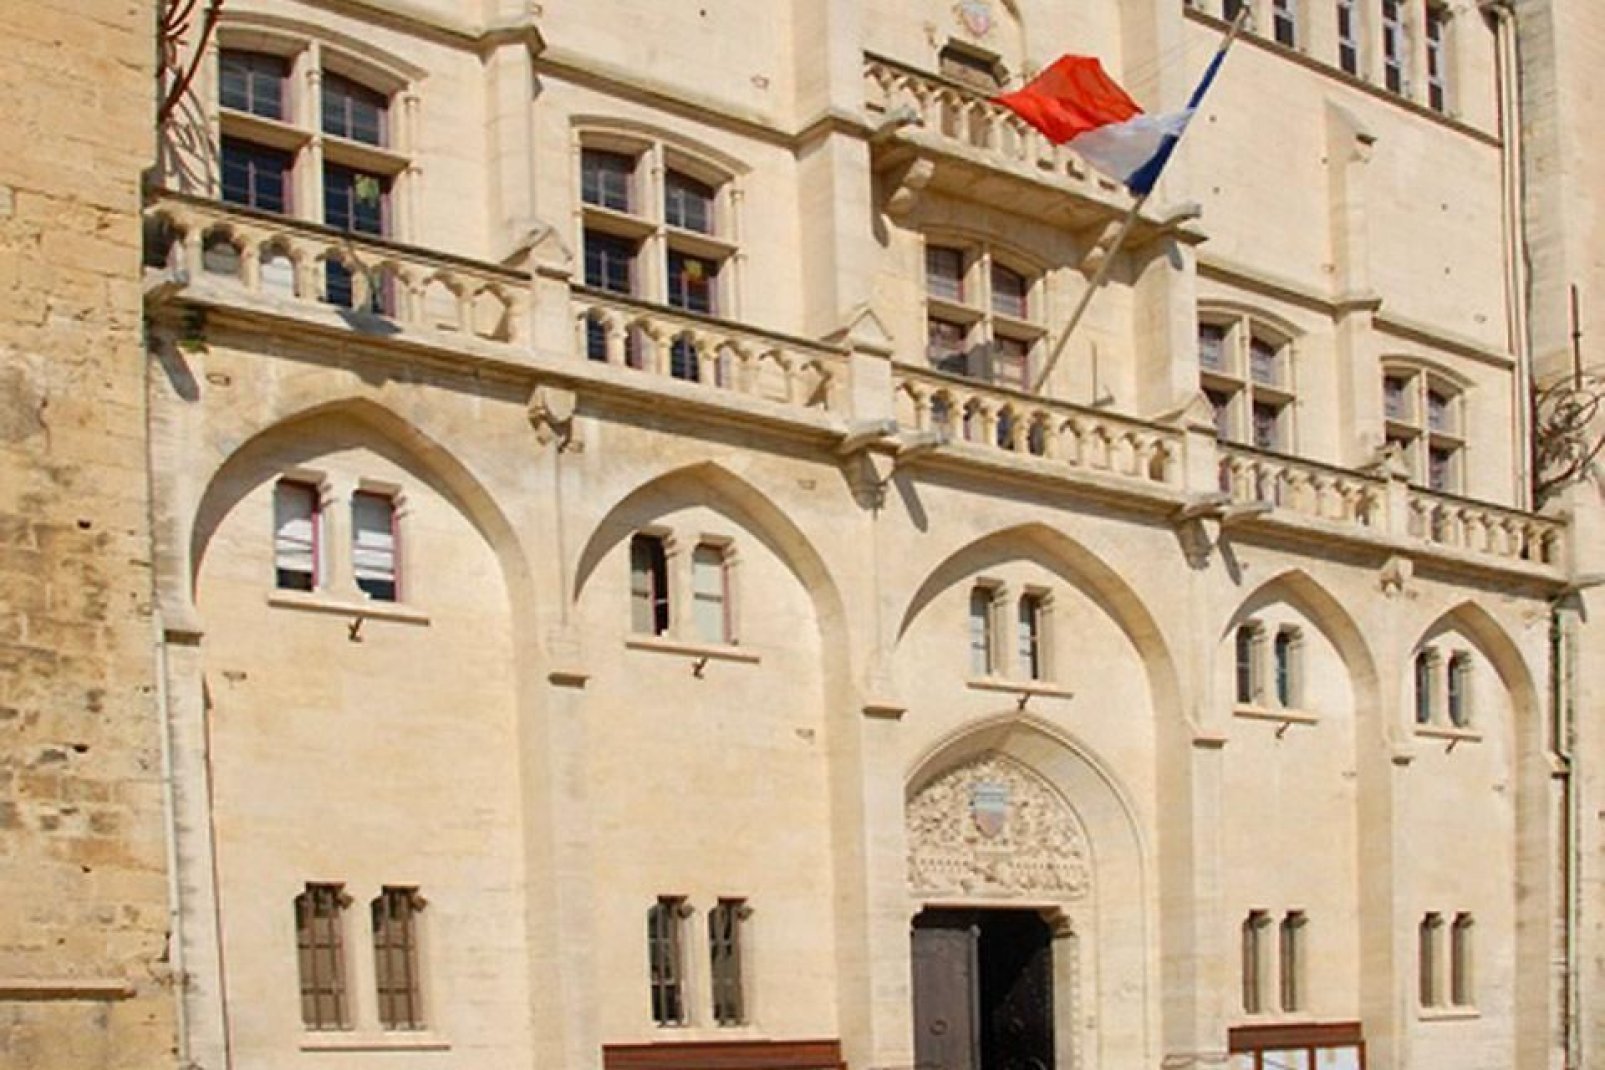 Das Kunsthistorische Museum befindet sich im erzbischöflichen Palast von Narbonne. Das Museum verfügt über zahlreiche Kunstsammlungen, unter anderem die Kollektion der Schönen Künste.